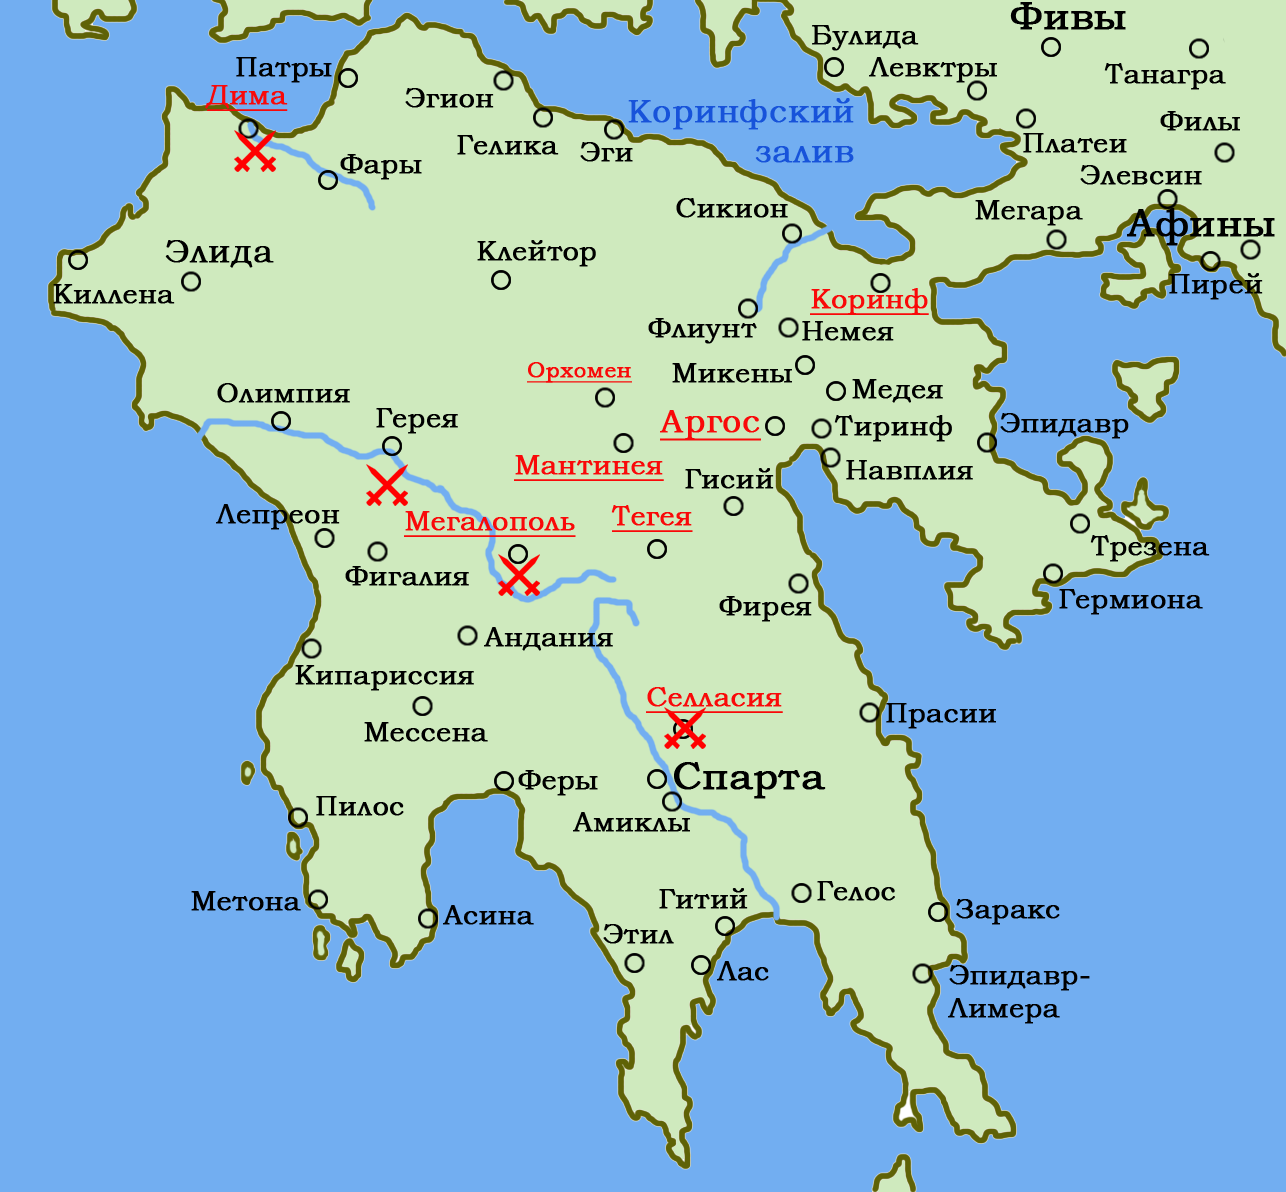 Древний город спарта на контурной карте. Древний полуостров Пелопоннес на карте. Полуостров Пелопоннес на карте. Пелопоннес на карте древней Греции. Пелопоннес Греция на карте.